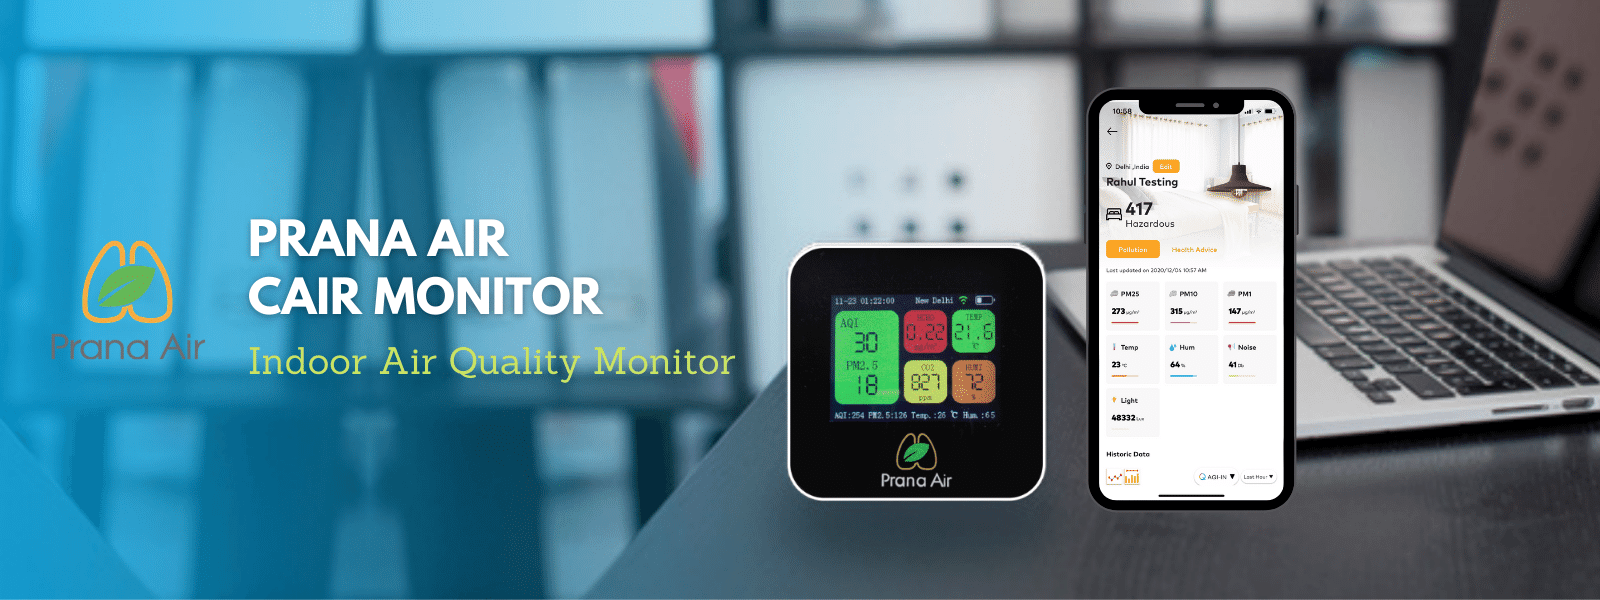 monitor della qualità dell'aria prana